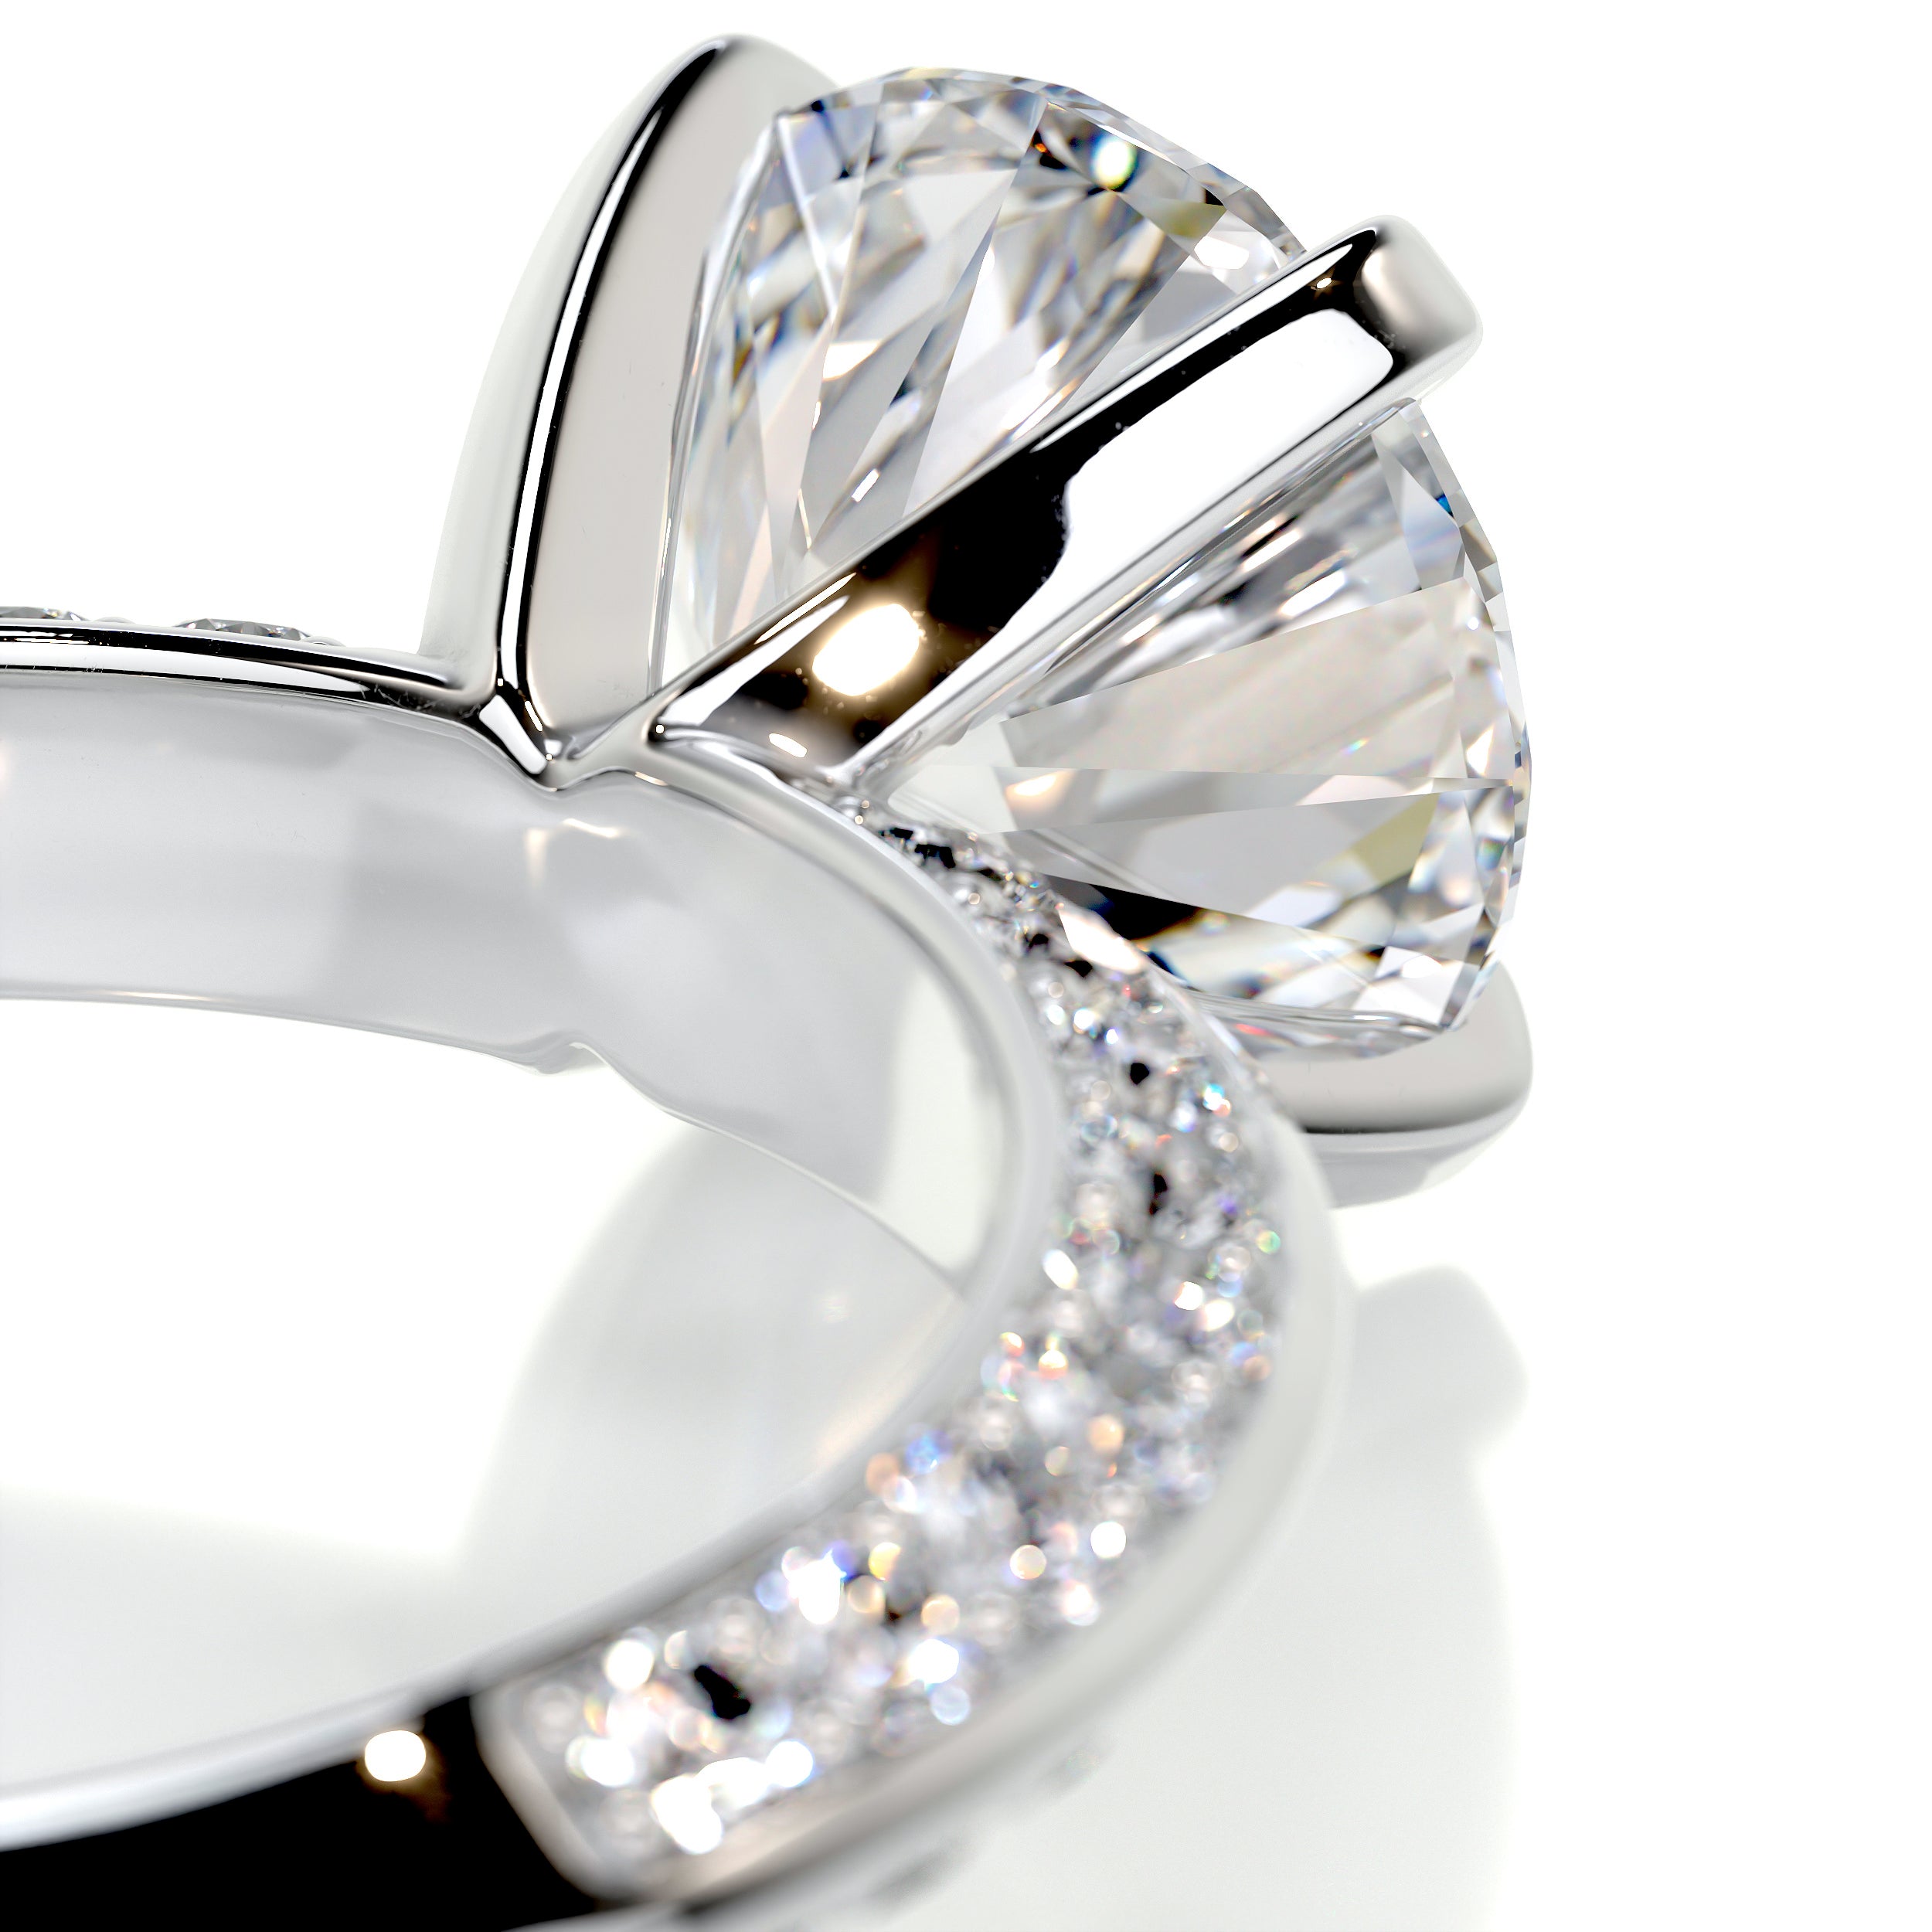 Ariana Diamond Engagement Ring -Platinum